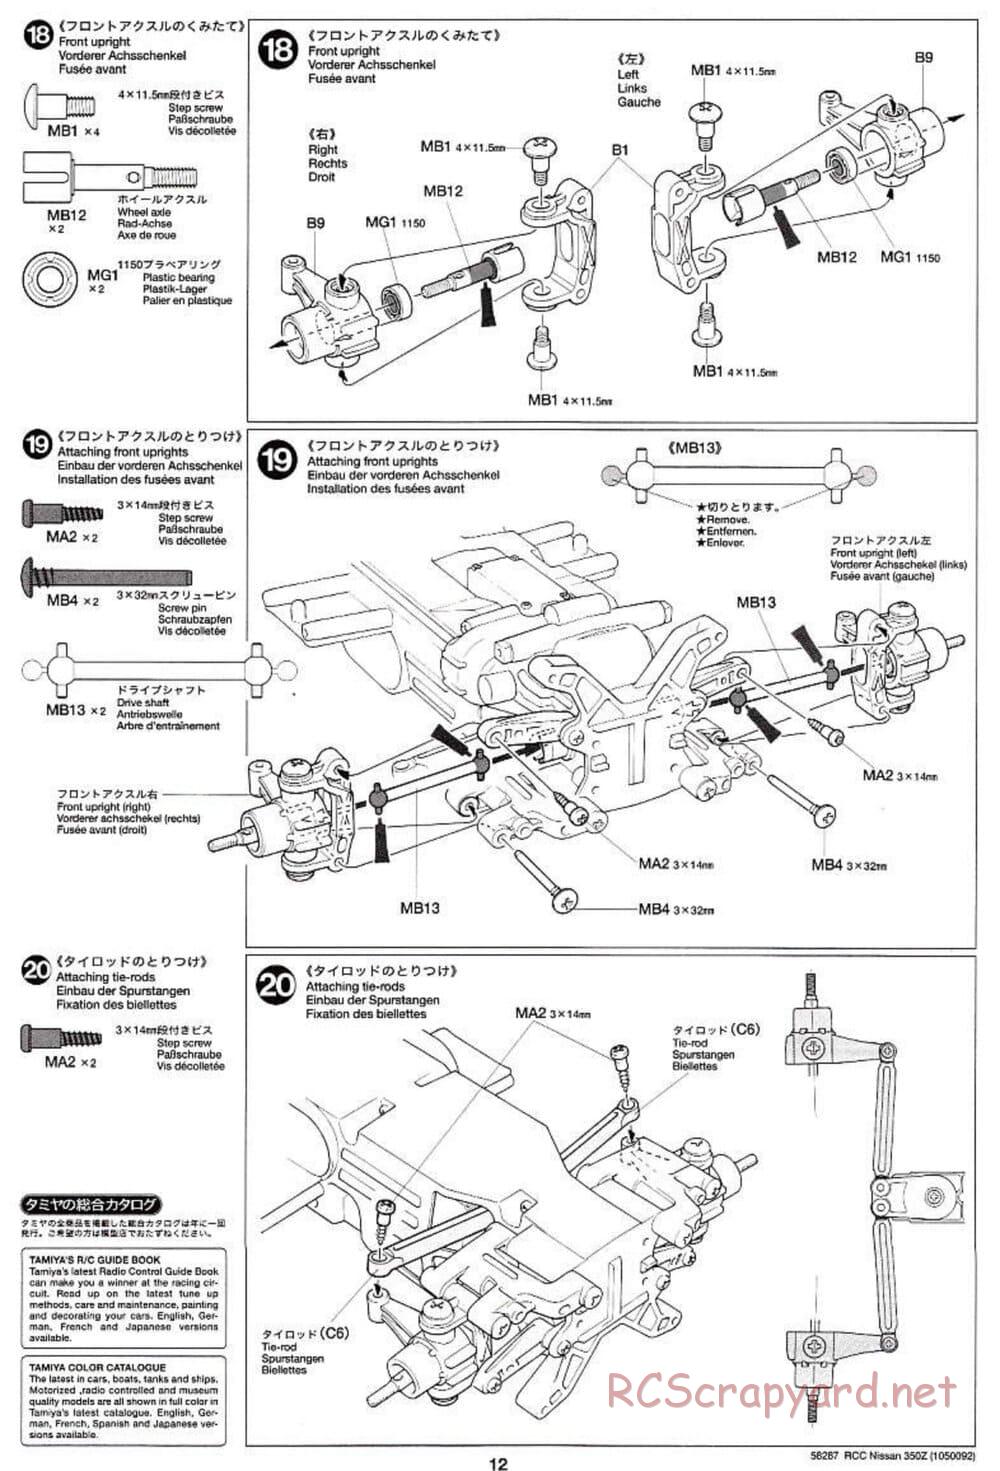 Tamiya - Nissan 350Z - TL-01 Chassis - Manual - Page 12